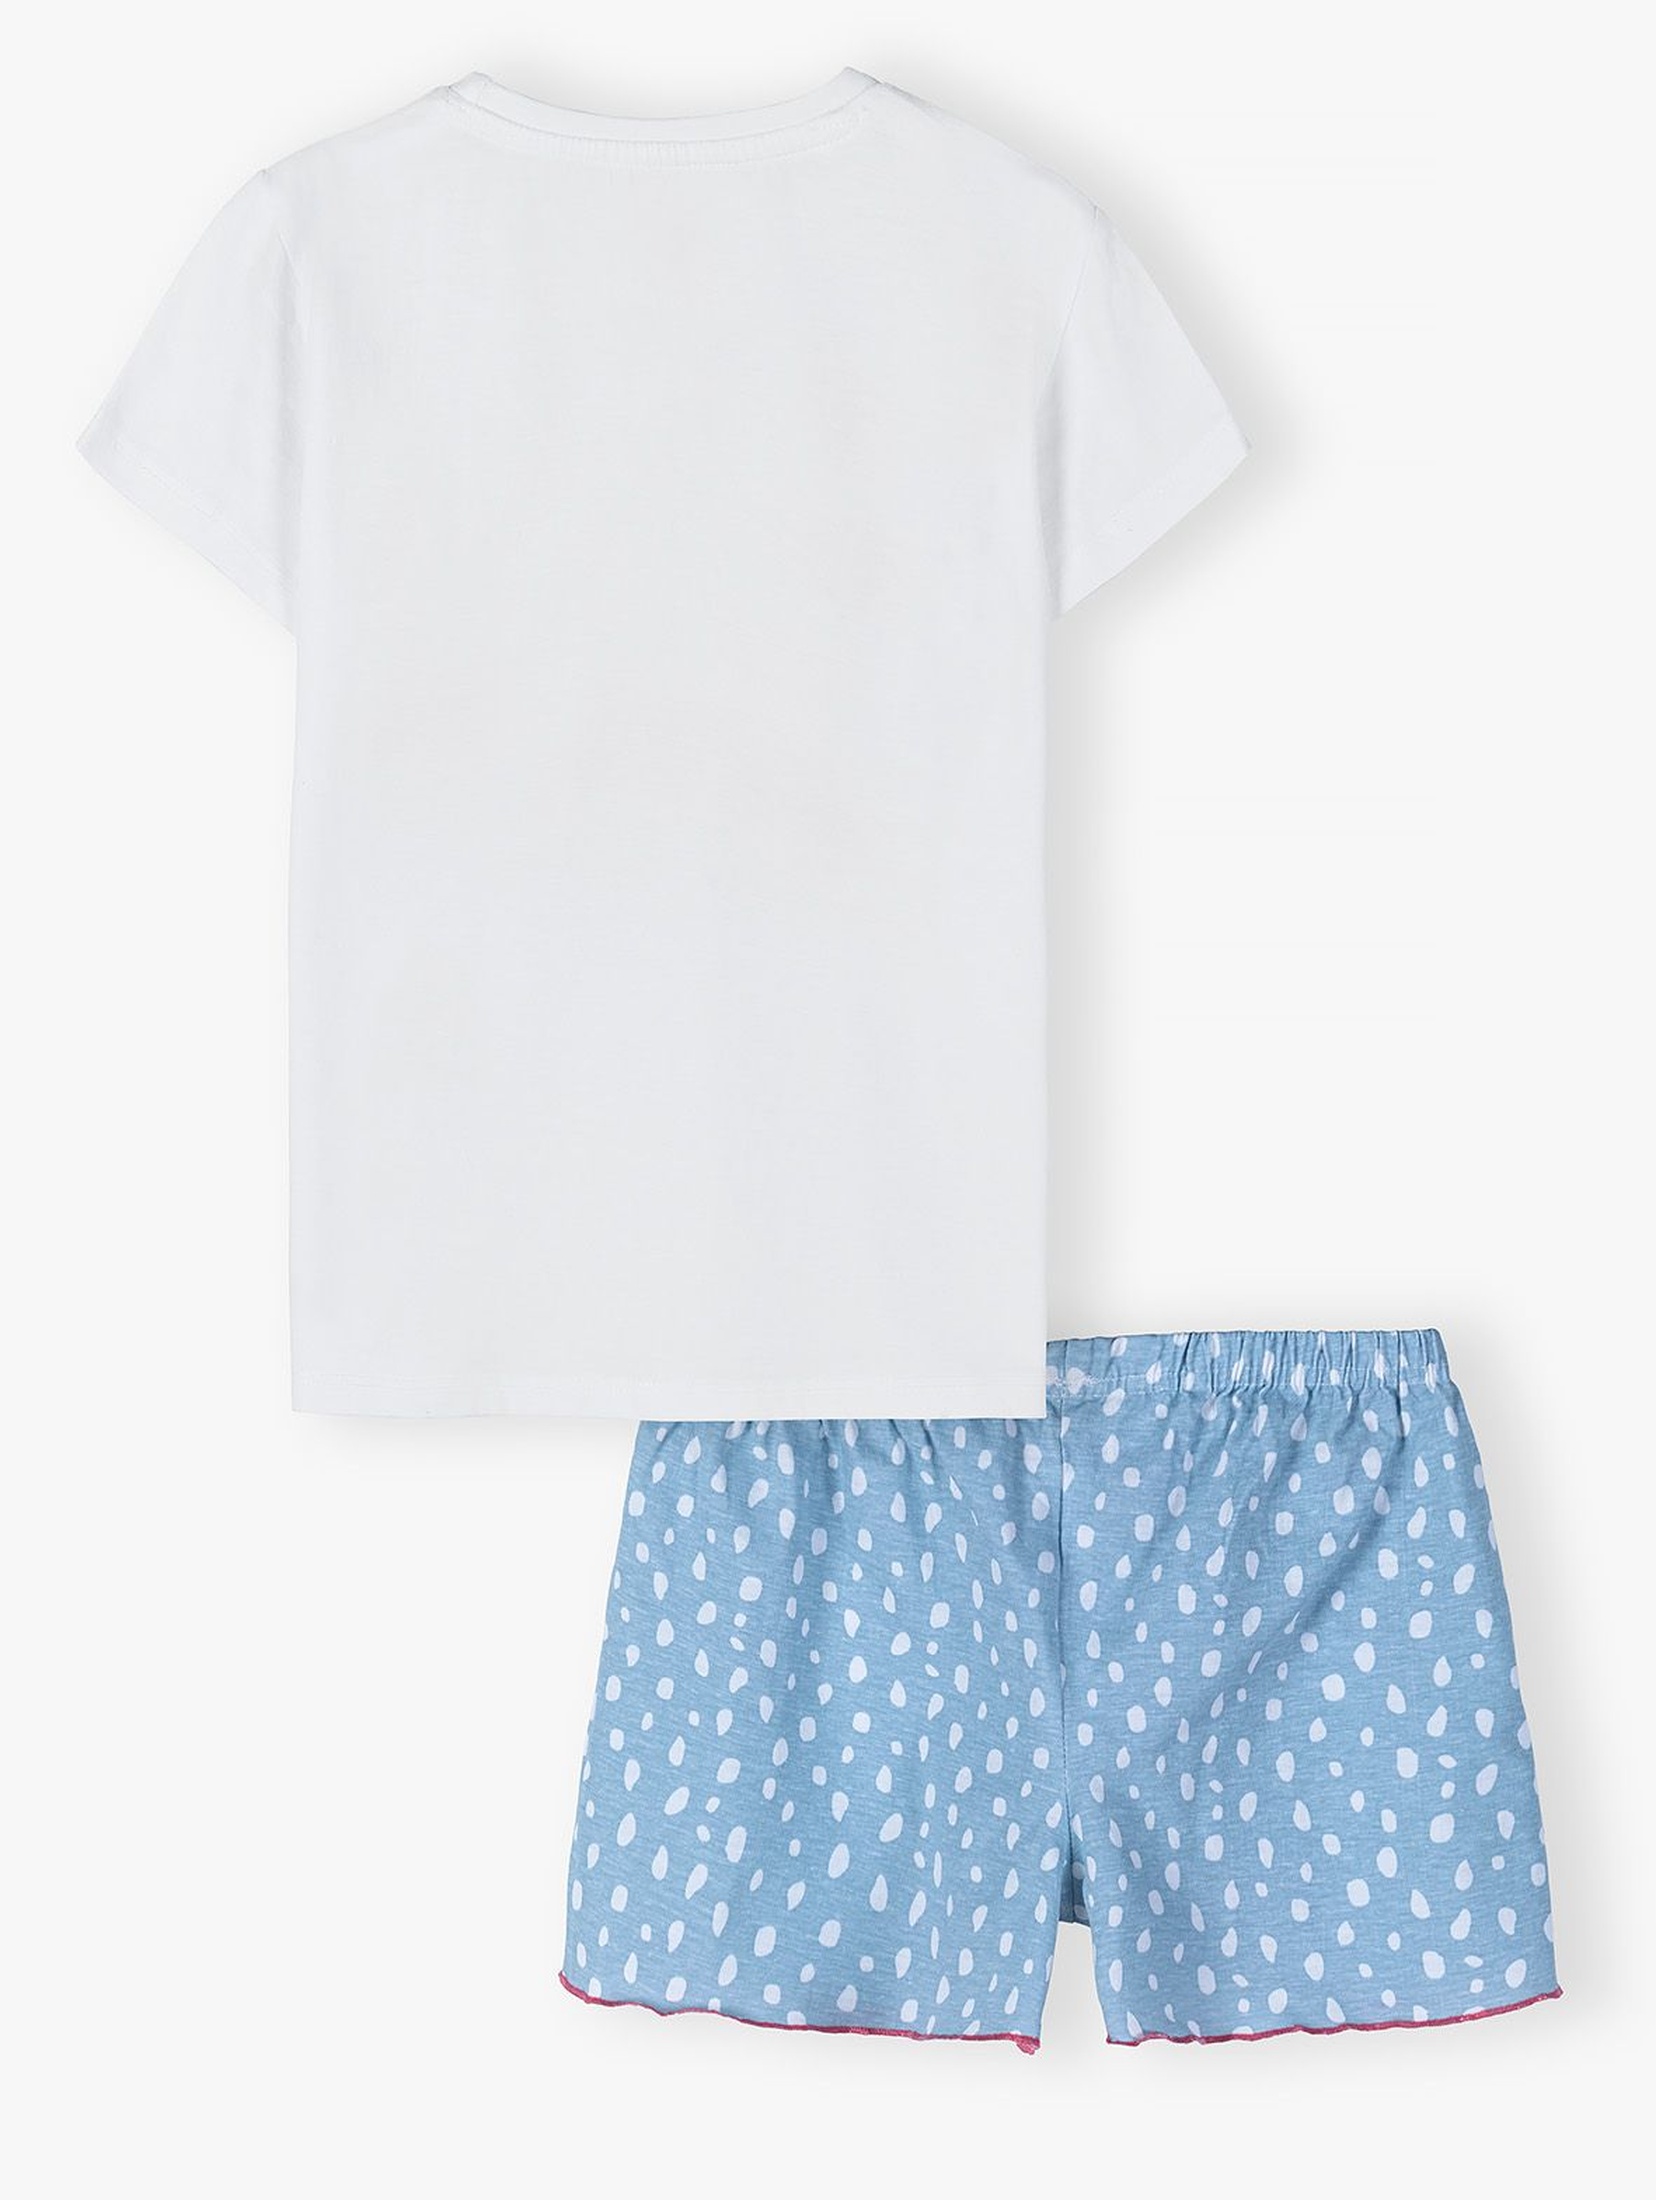 Dwuczęściowa piżama dziewczęca - T-shir i krótkie spodnie we wzorki